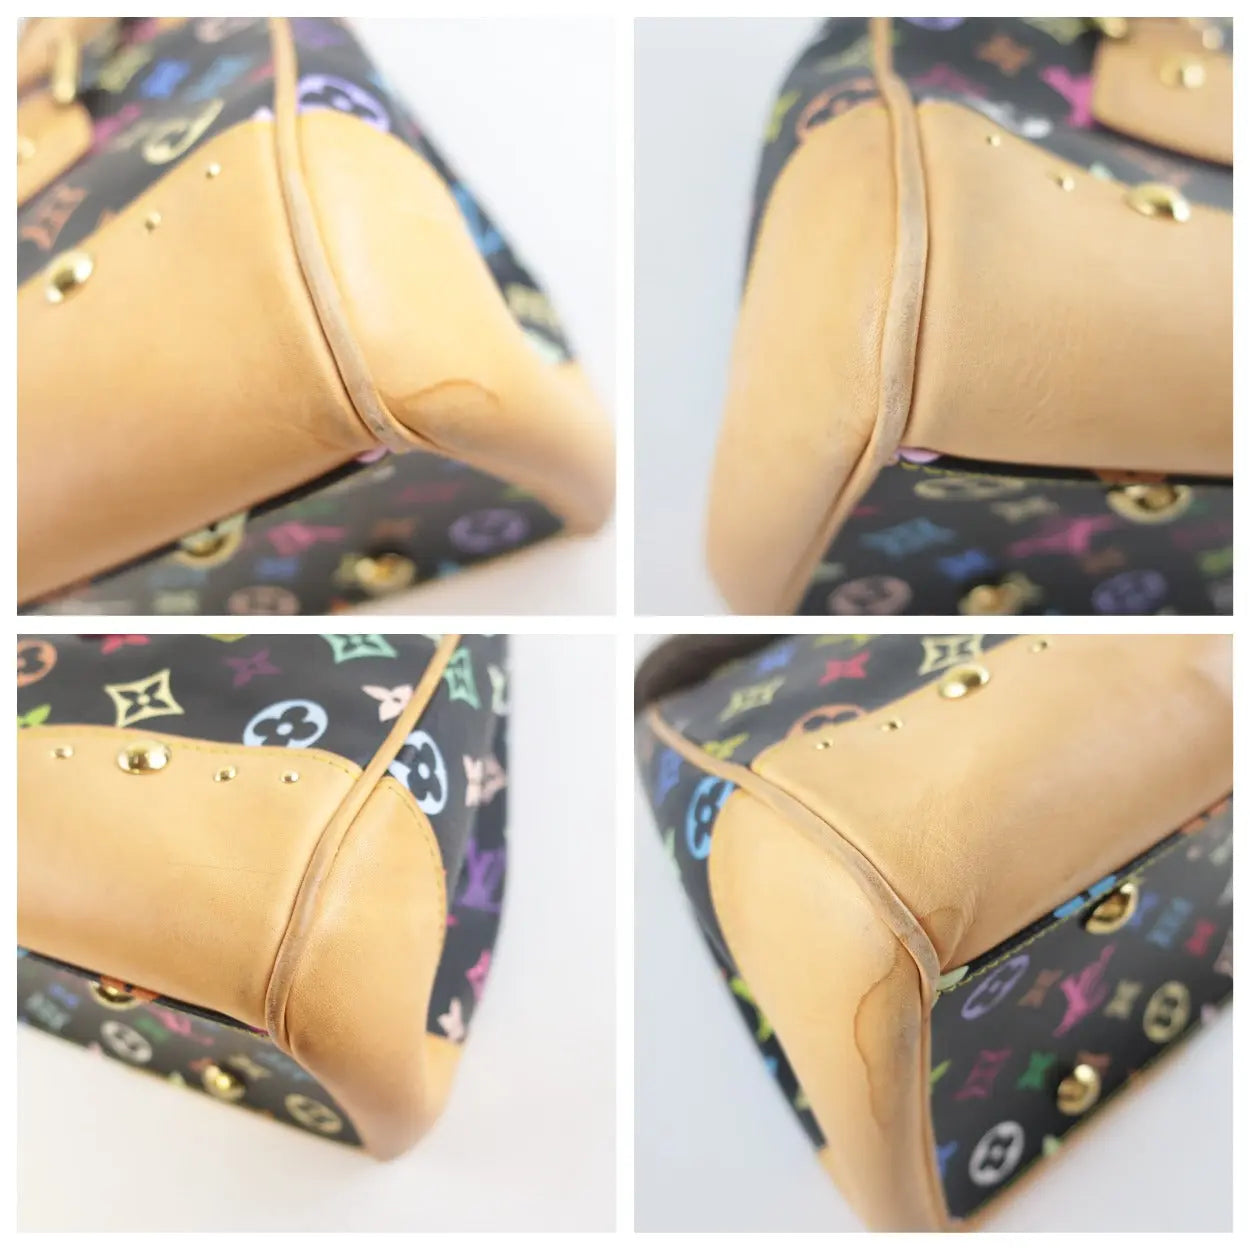 Louis Vuitton Rare Multicolor Beverly Handbag · INTO